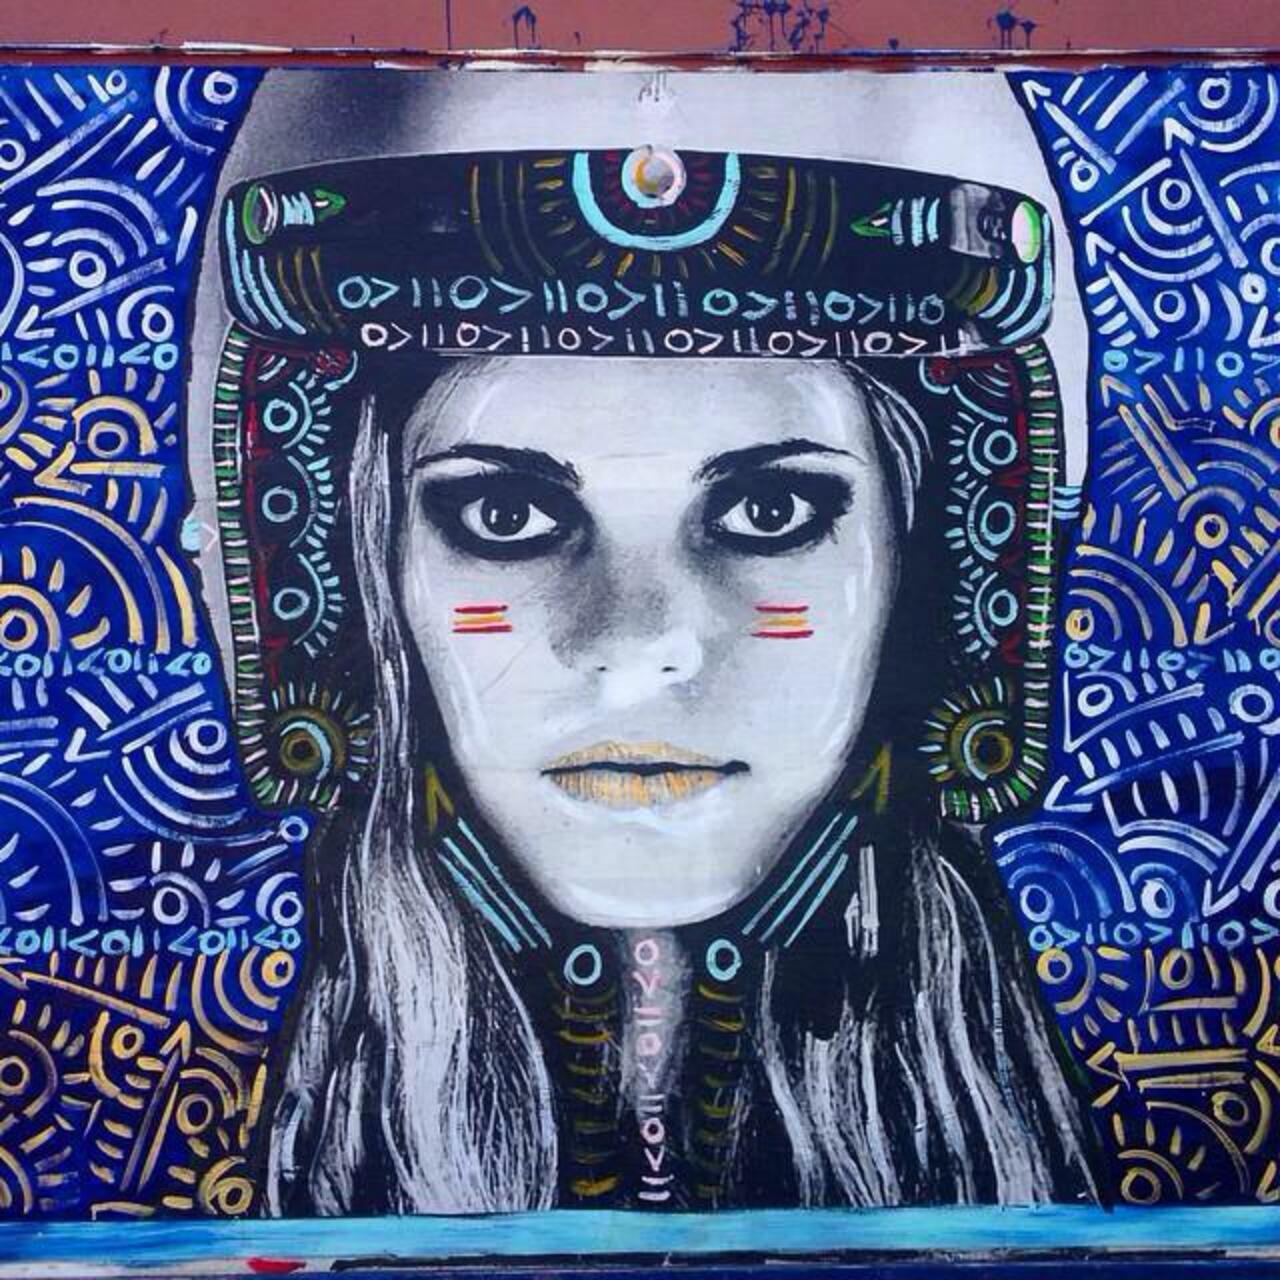 Street Art by Kelcey Fisher in LA
Photo by djcatnap

#art #arte #graffiti #streetart http://t.co/DdpuB4G0fv